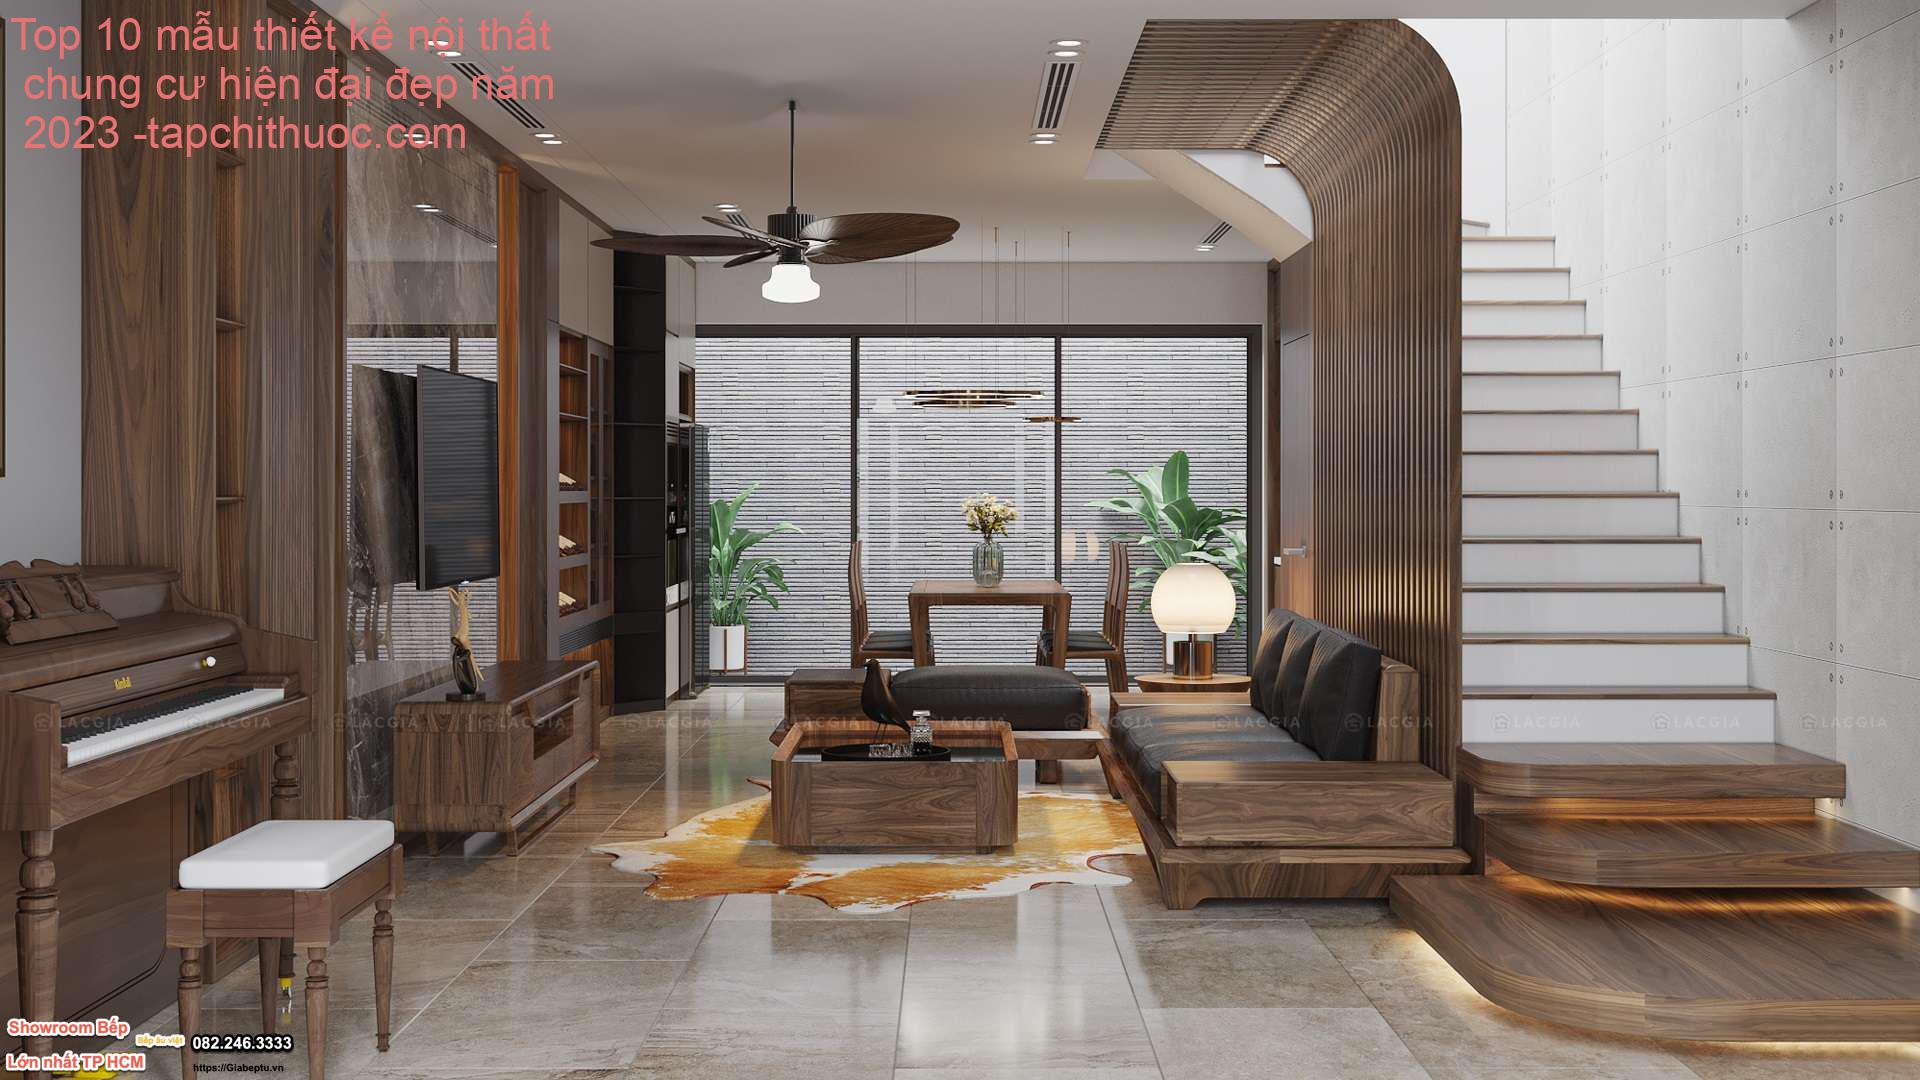 Top 10 mẫu thiết kế nội thất chung cư hiện đại đẹp năm 2023